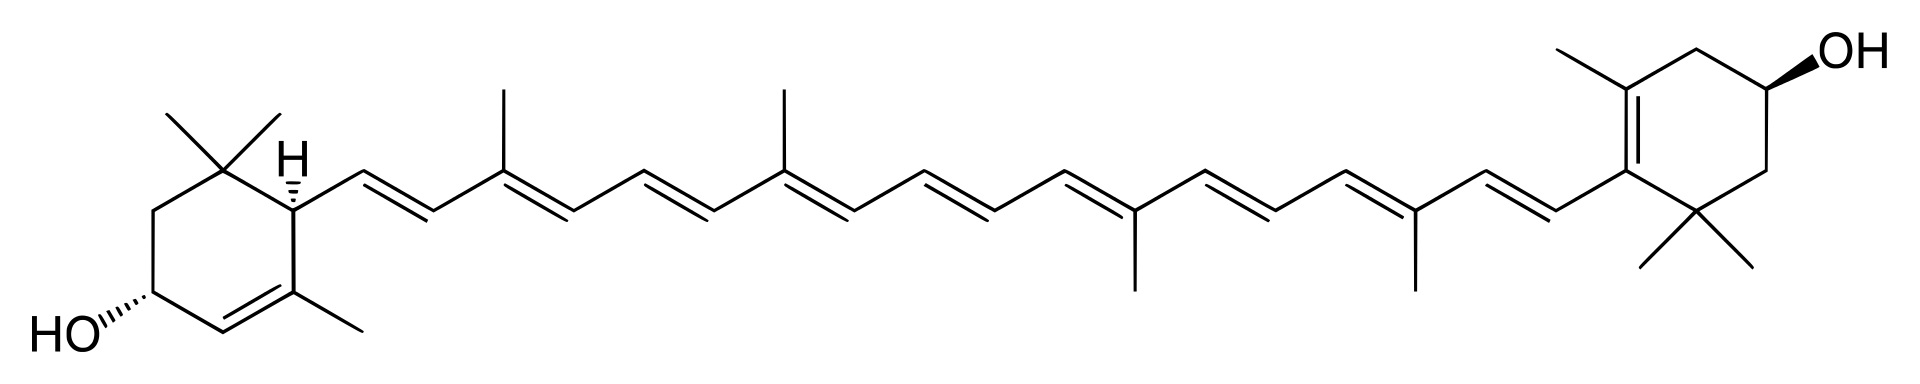 Lutein (z latinského luteus - žlutý) je žlutooranžové xanthofylové barvivo náležející mezi karotenoidy. Je izomerem zeaxantinu, tzn. že s ním má stejný sumární vzorec, ale liší se ve vnitřní struktuře (konkrétně odlišném umístění dvojné vazby). Lutei